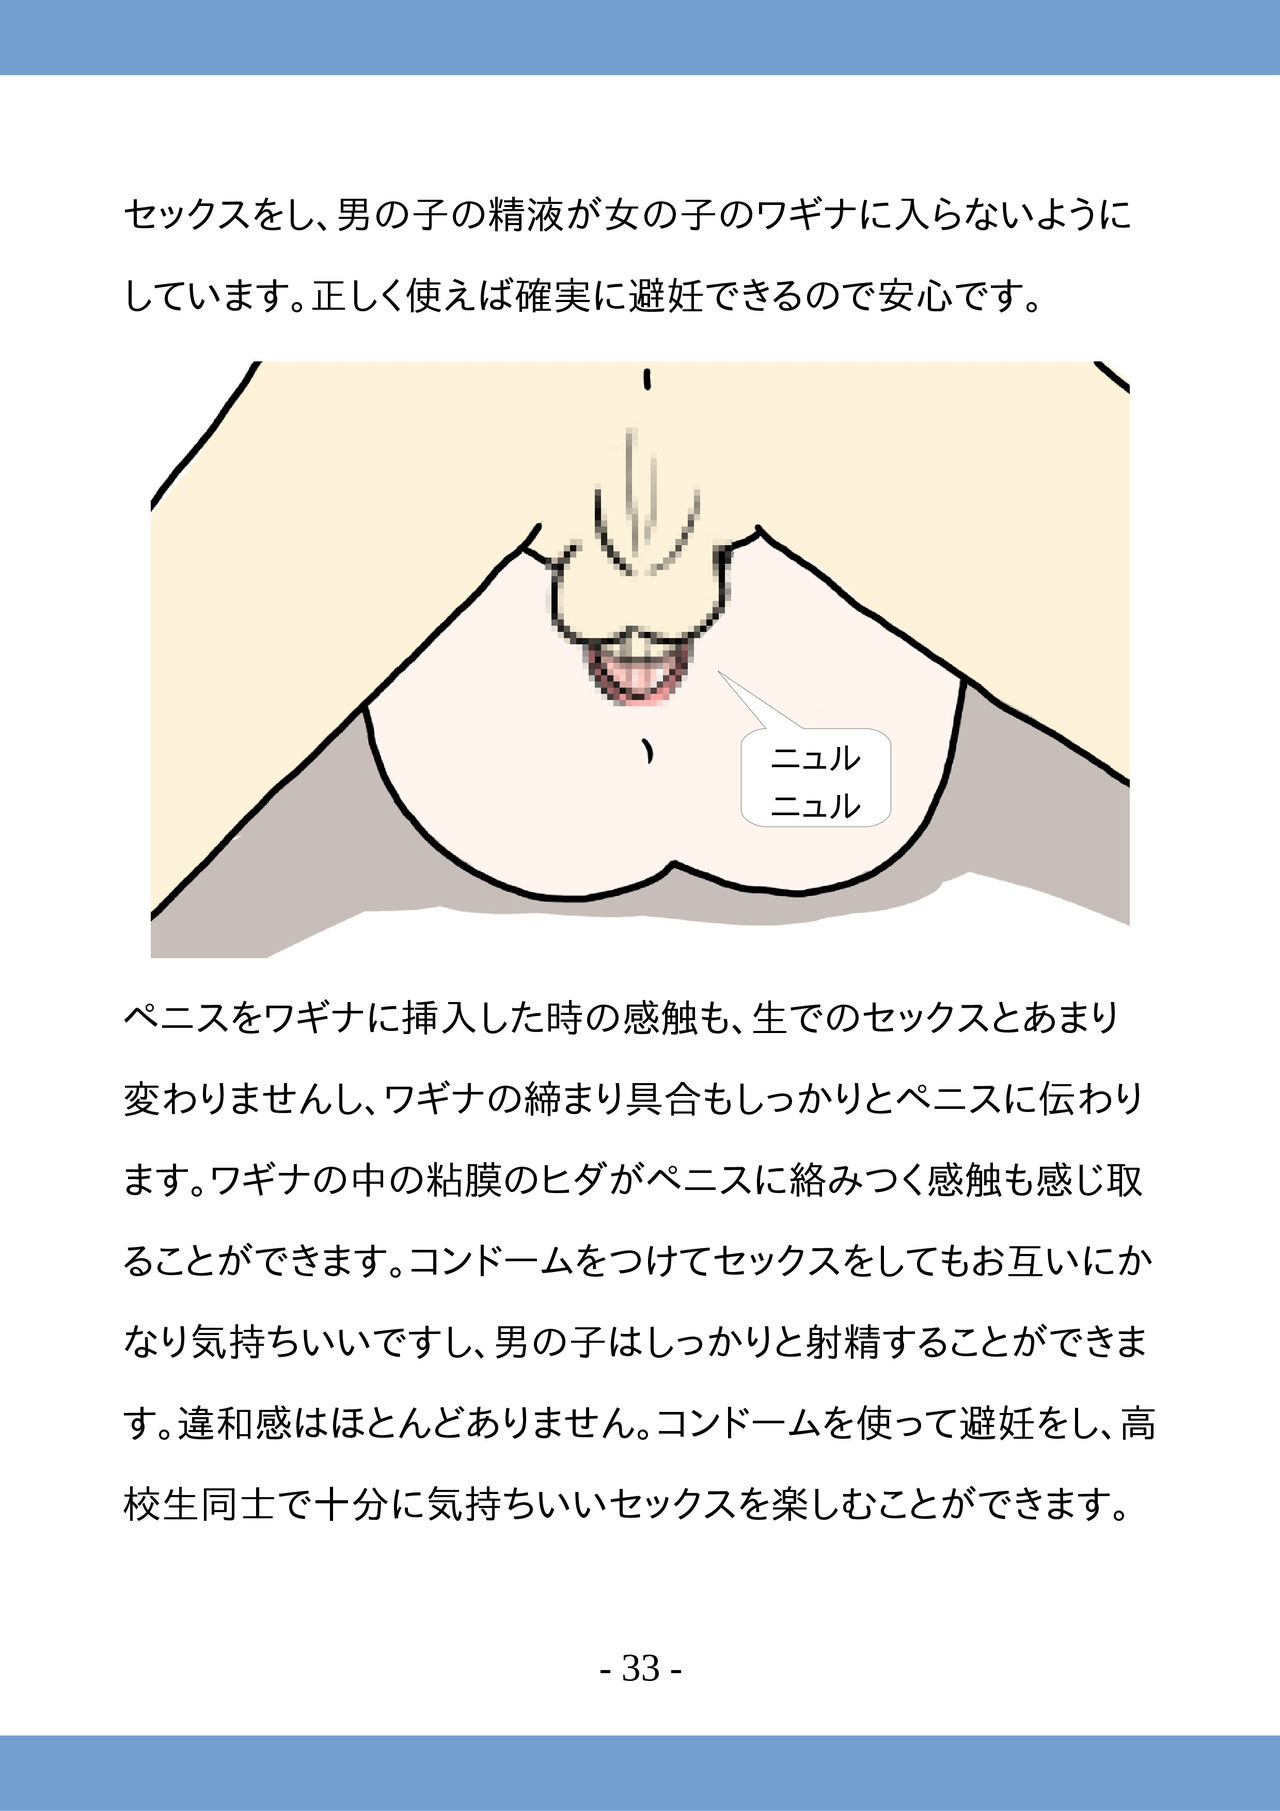 [poza] Koukousei no Tame no Sex Kouza -Koukousei Doushi de no Sex to Ninshin- page 33 full